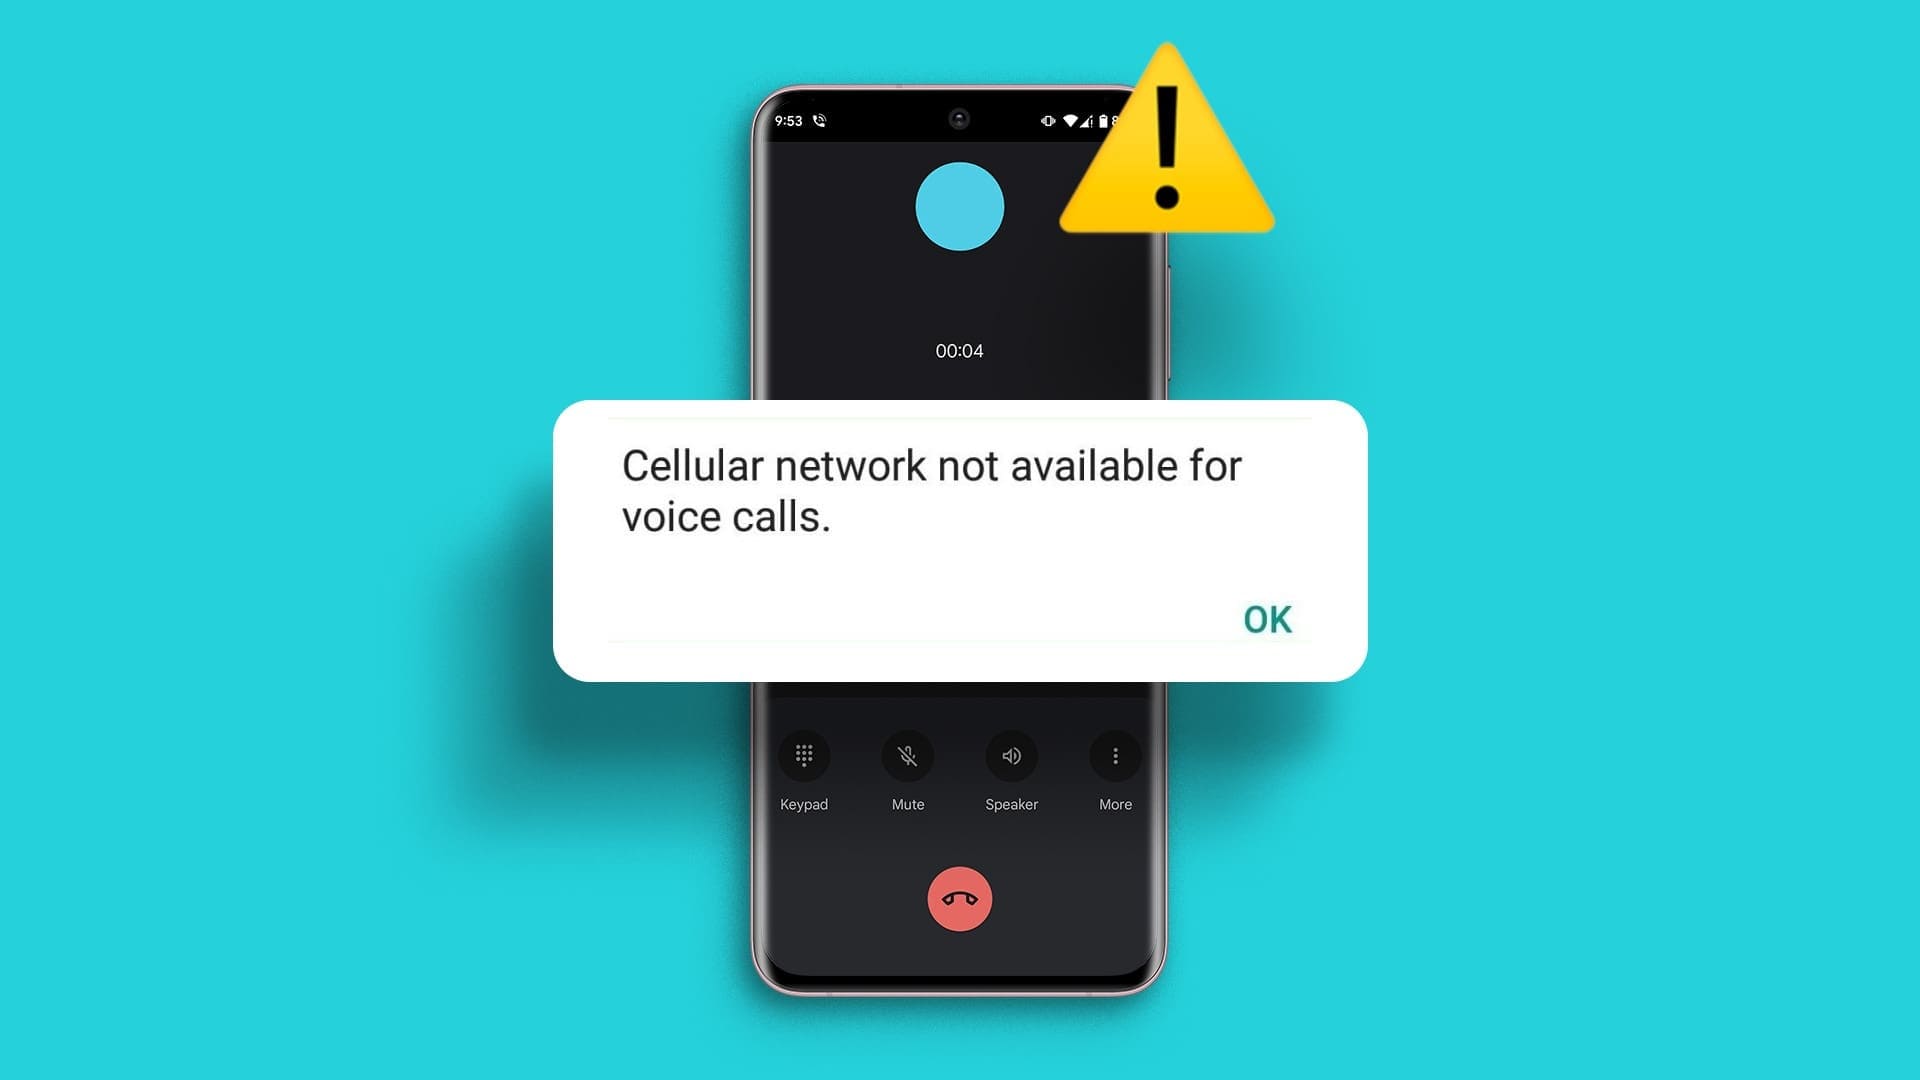 10 إصلاحات لمشكلة "الشبكة الخلوية غير متاحة للمكالمات الصوتية" على الهاتف - %categories